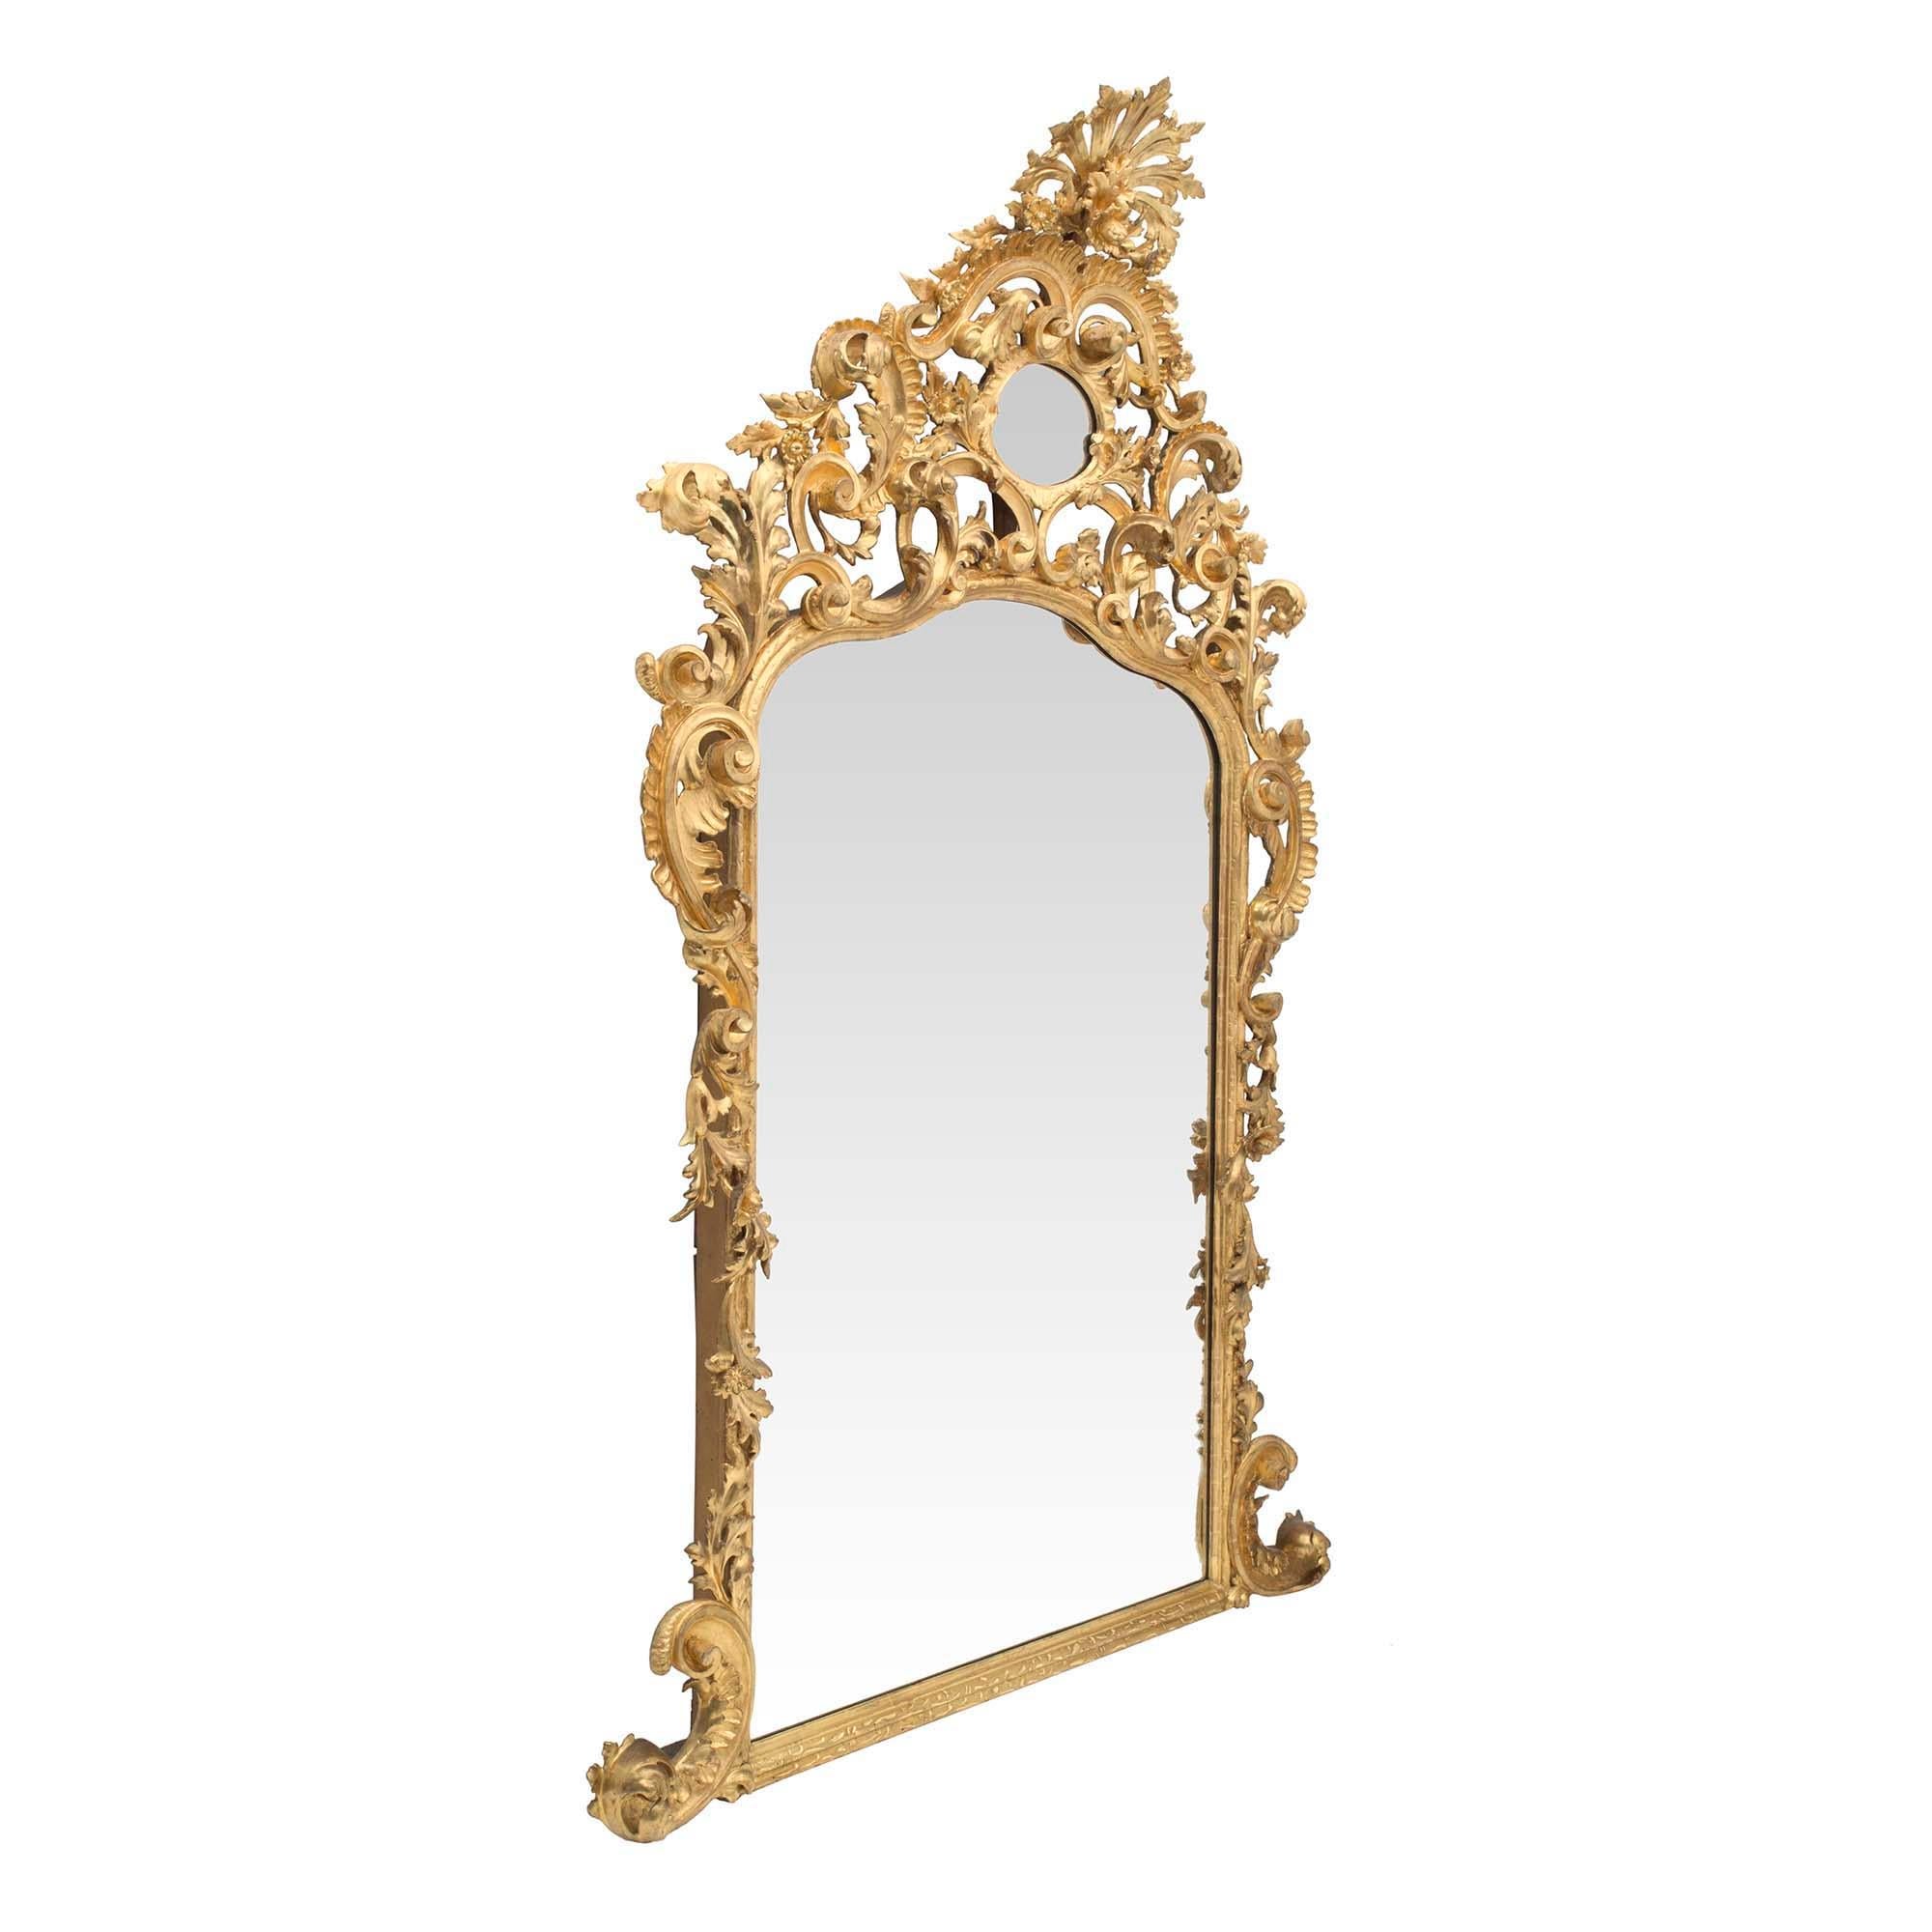 Miroir en bois doré baroque italien du début du XIXe siècle de qualité exceptionnelle et de grande taille. Le bas du miroir présente un cadre moucheté avec des volutes en forme de 